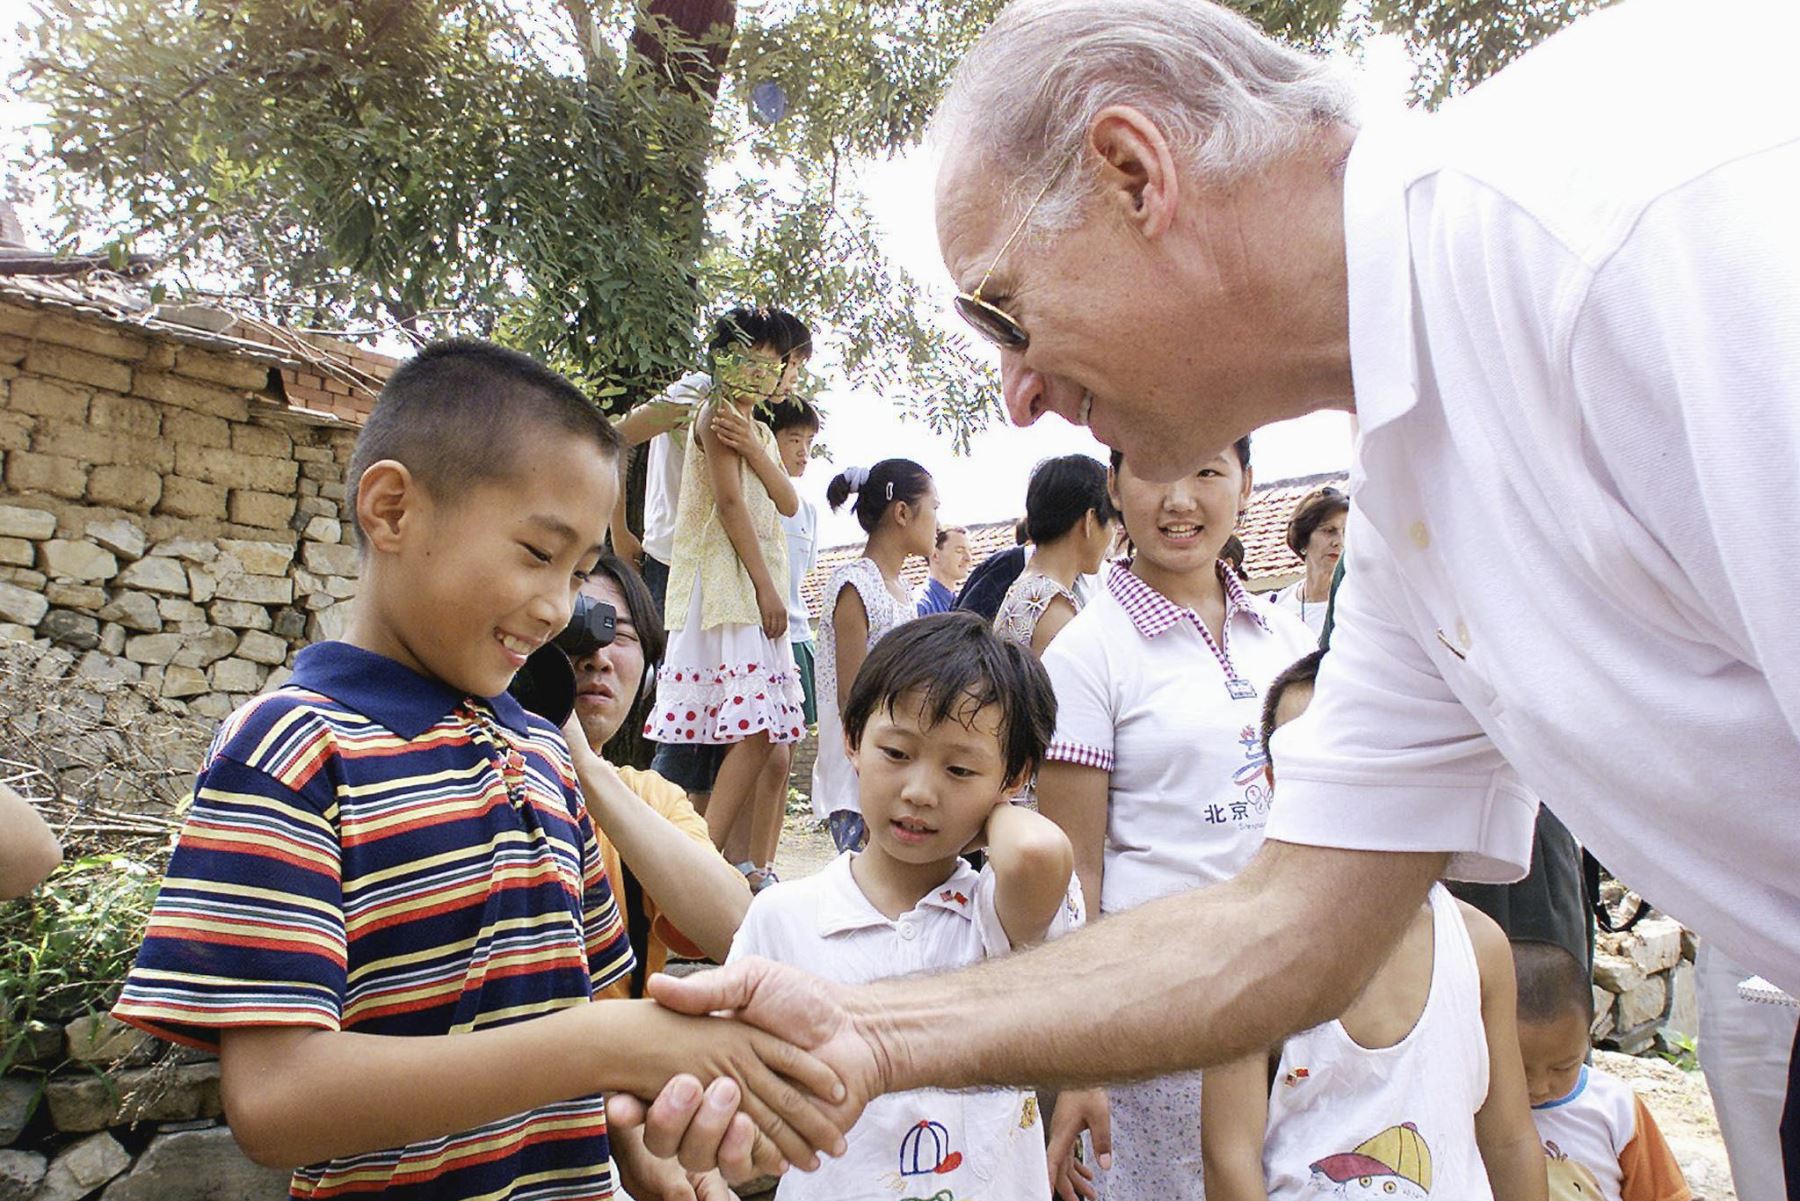 El presidente del Comité de Relaciones Exteriores del Senado de los Estados Unidos, Joseph Biden, le da la mano a Gao Shan, de nueve años, el niño que Biden proclamó como futuro presidente de China, durante una visita a la aldea de Yanzikou, al norte de Beijing, el 10 de agosoto del 2001. Foto: AFP